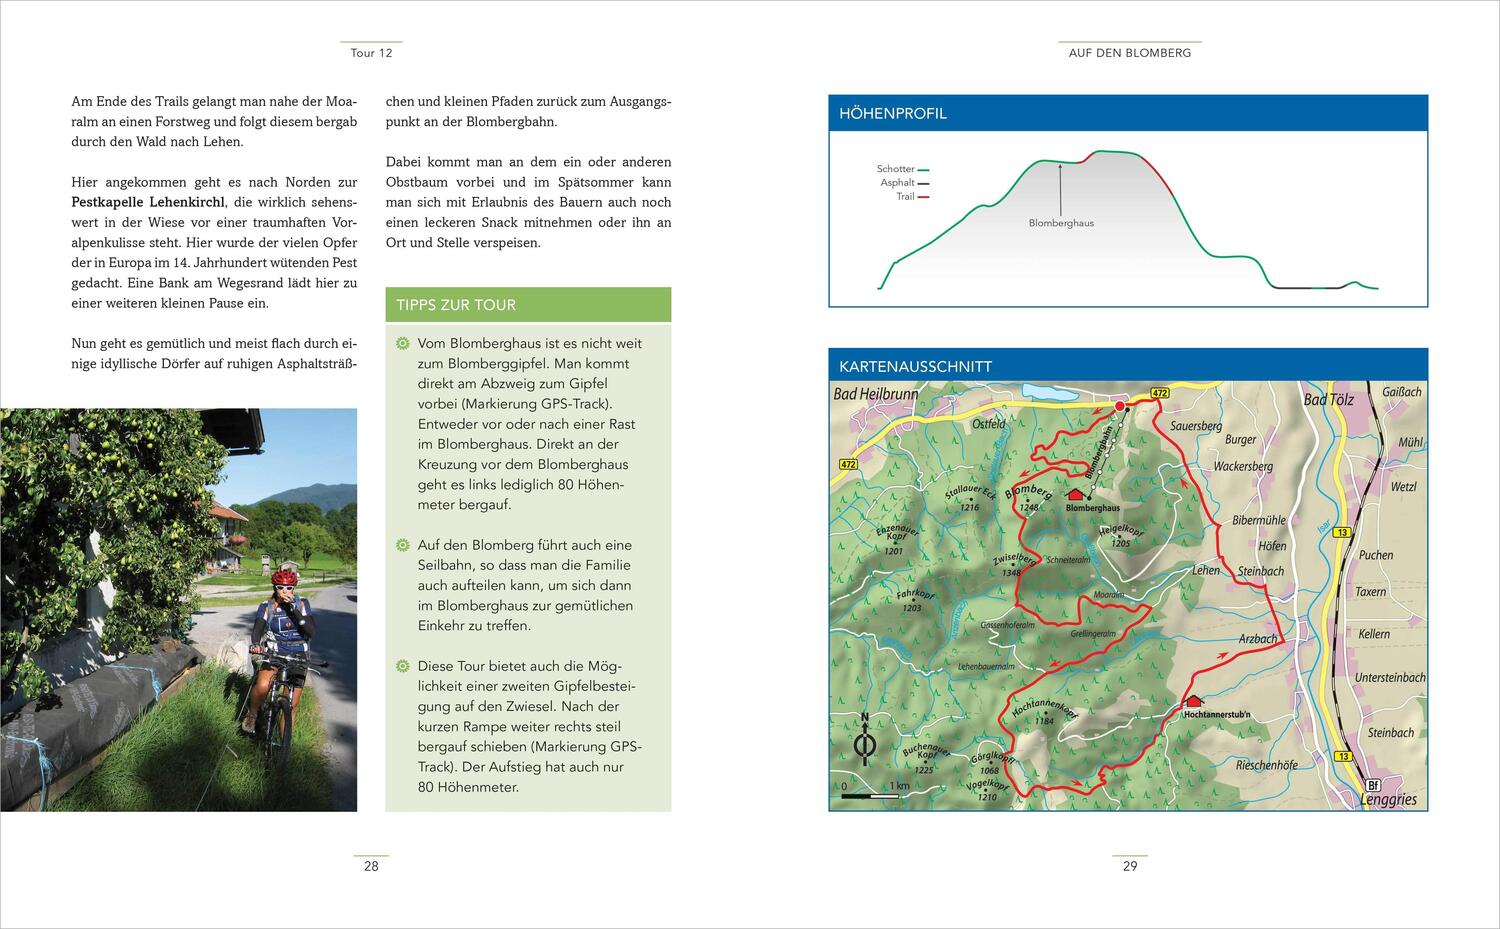 Bild: 9783809444152 | Die schönsten (E-)Mountainbike-Touren in den Bayerischen Alpen | Buch